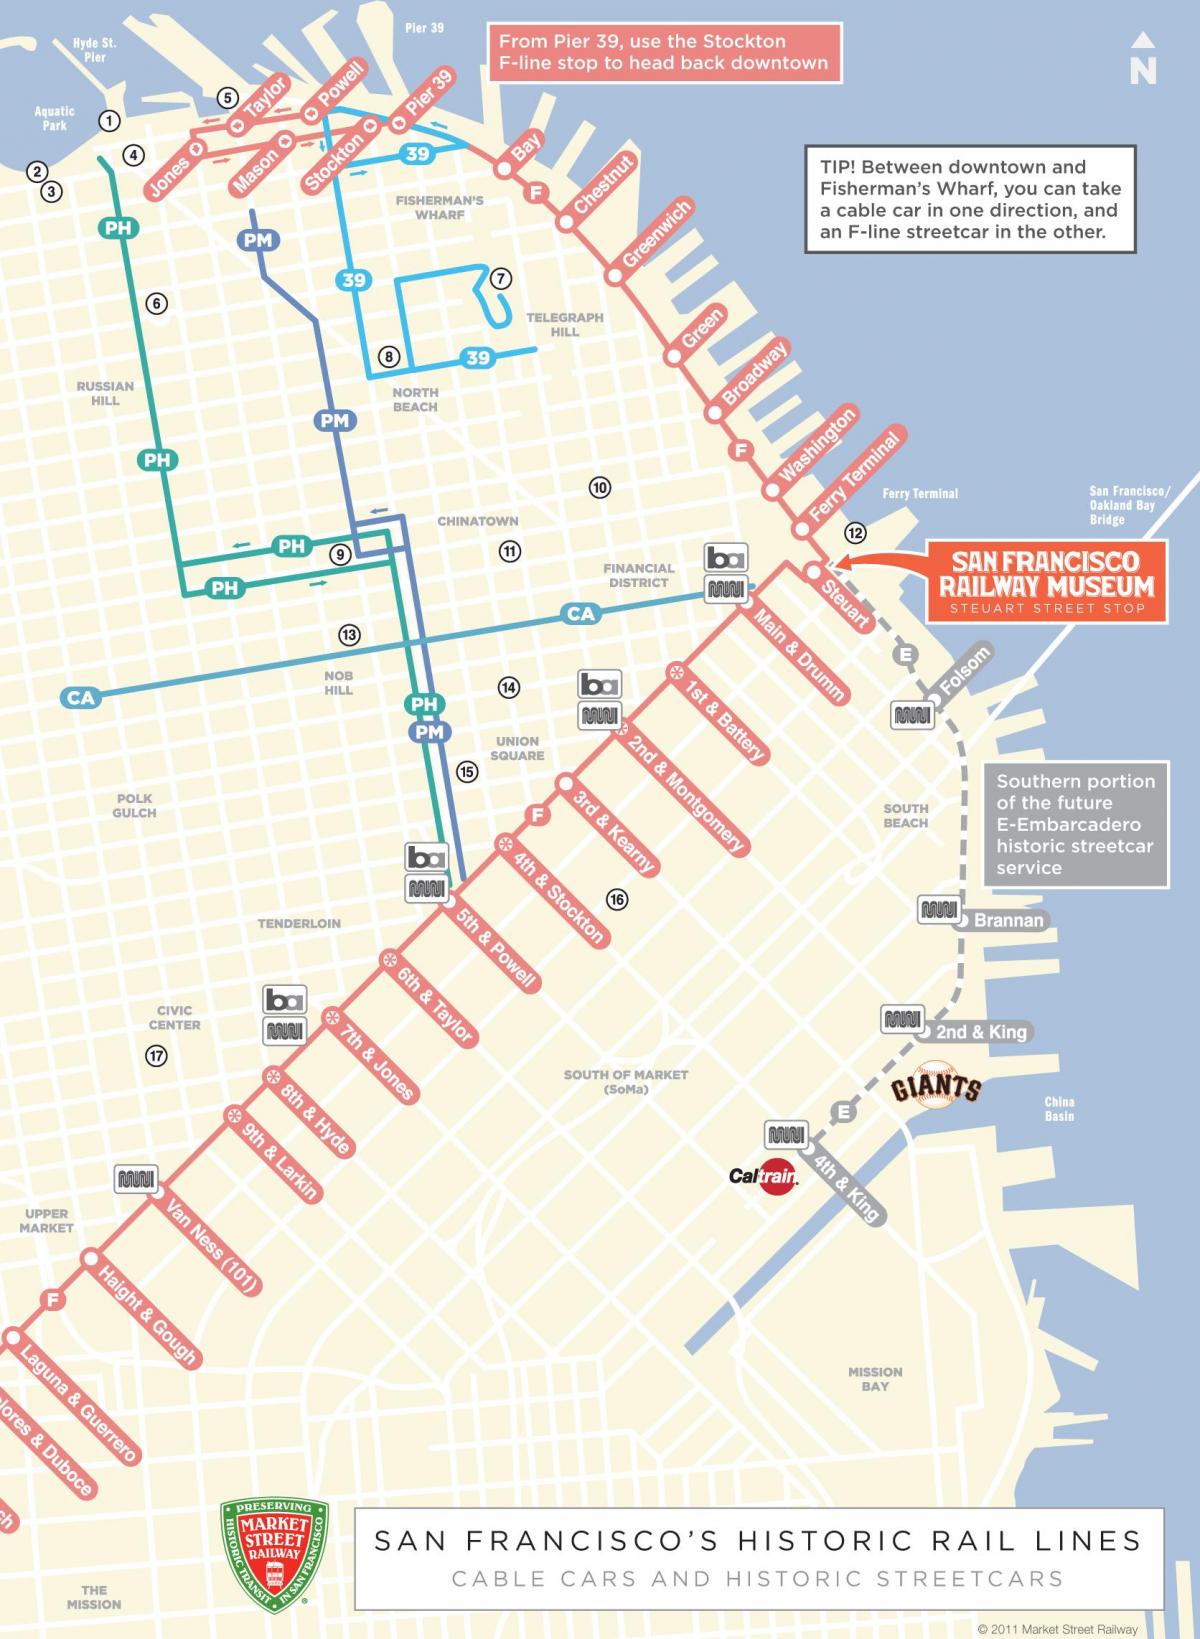 Harta de telecabina ruta San Francisco, ca